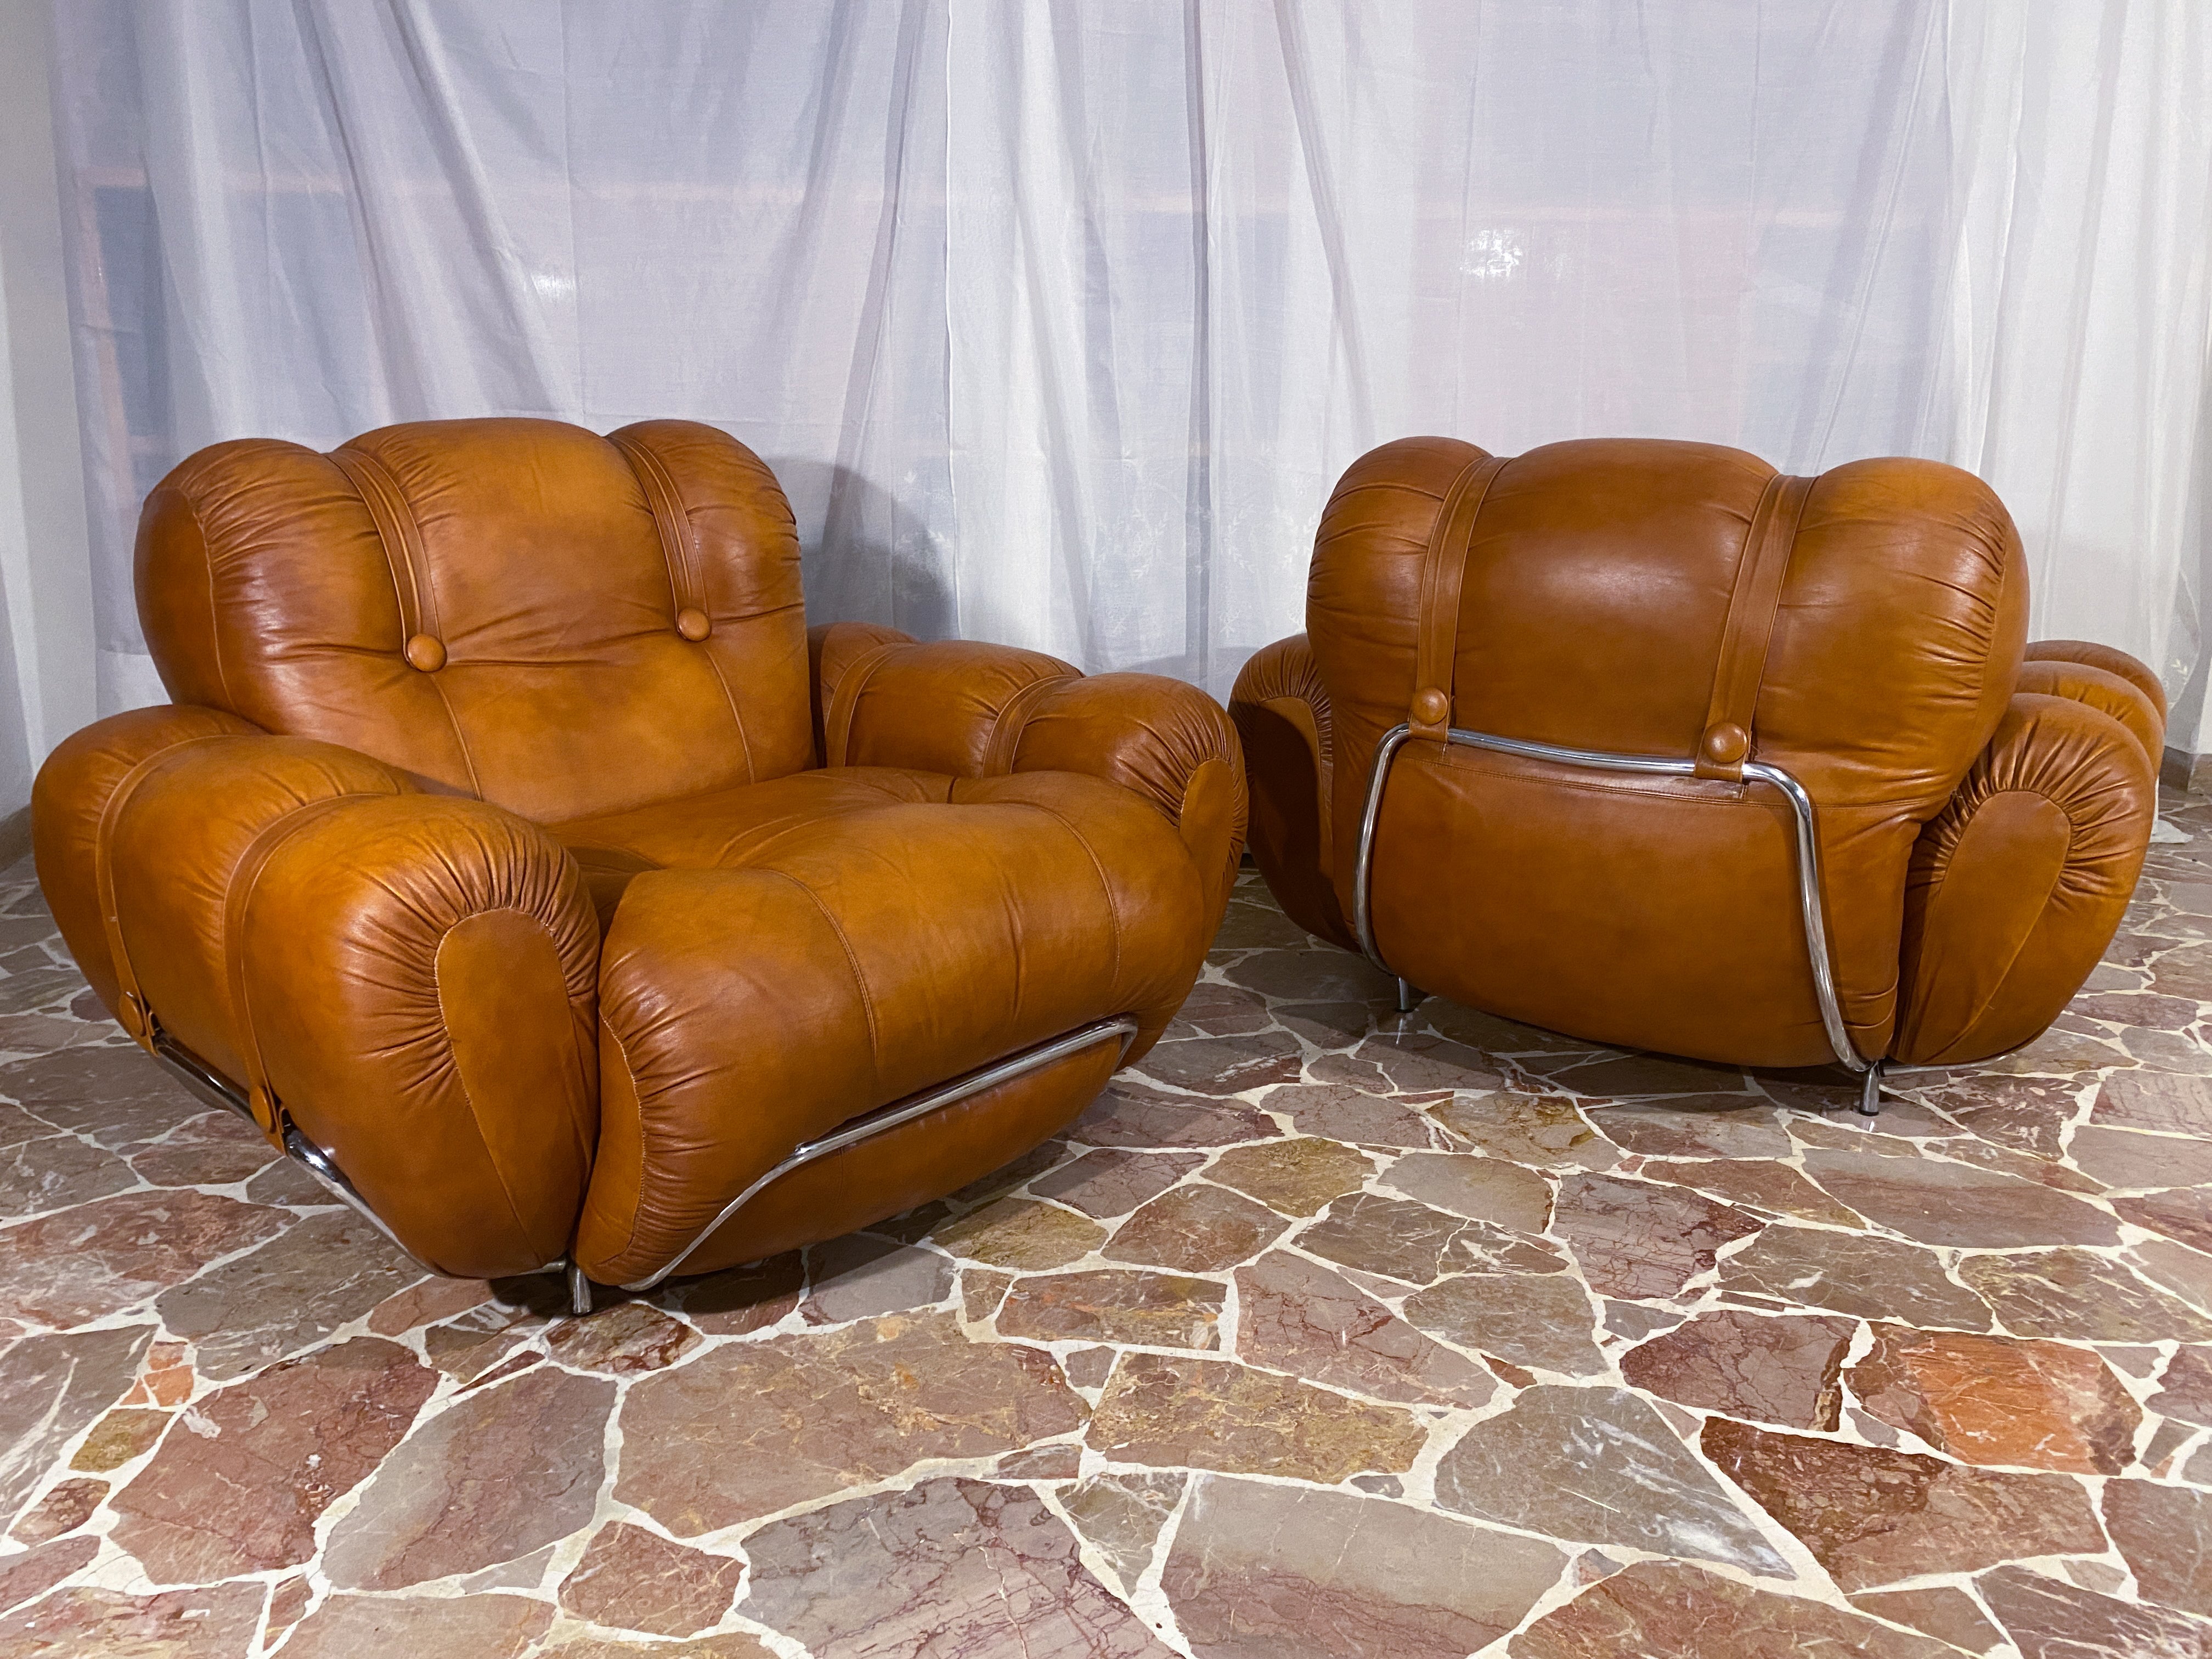 Ein atemberaubendes Paar Sessel, hergestellt in Italien in den 1970er Jahren. Der Sitz ist sehr bequem und stützend. Die Pads sind noch original und in sehr gutem Zustand. Originaler Naturlederbezug in sehr gutem Zustand aus der Zeit, ein